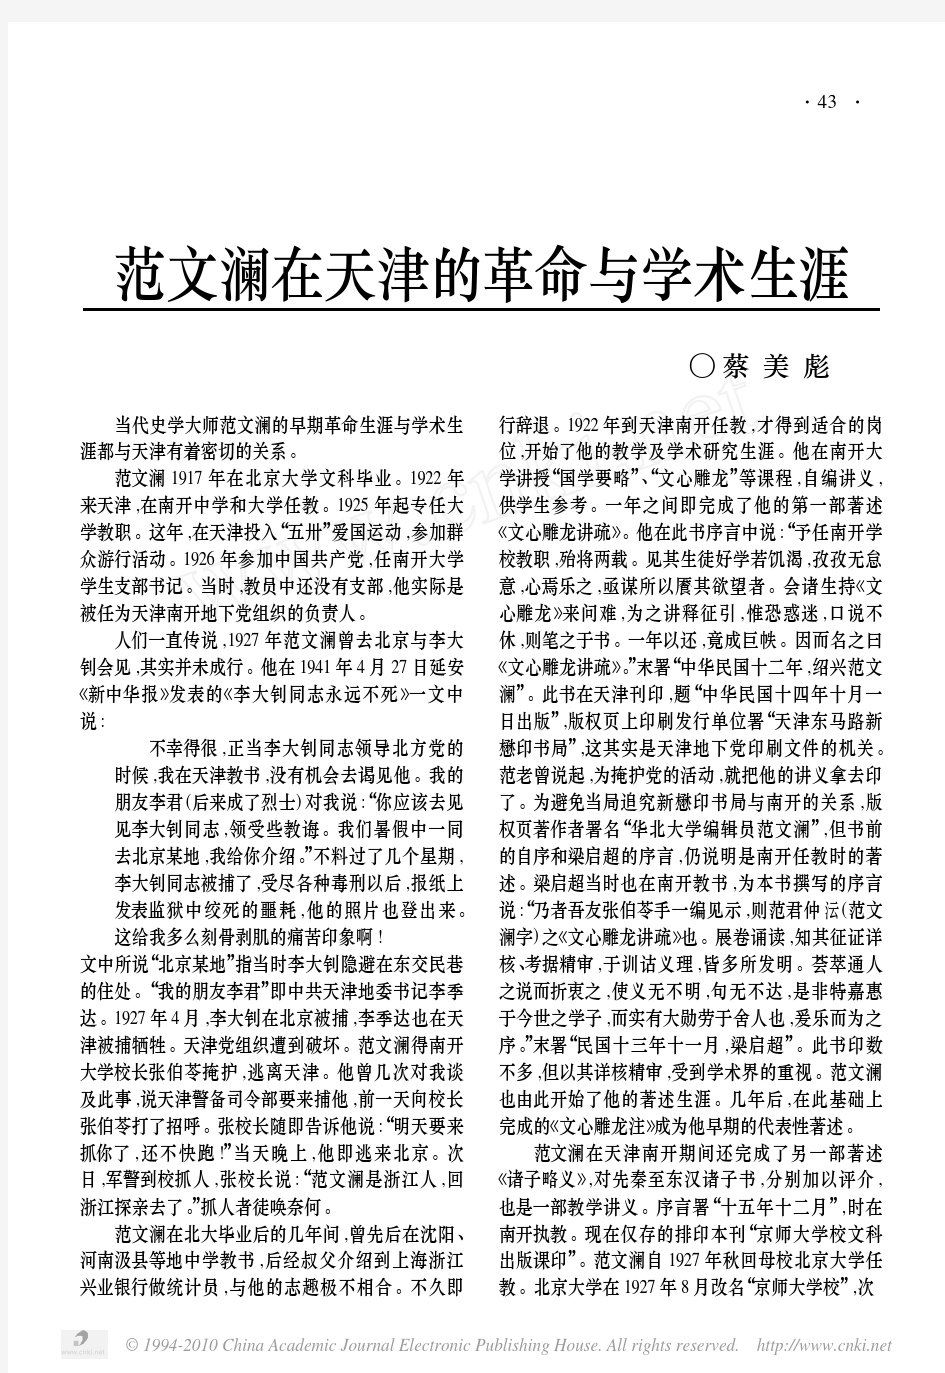 范文澜在天津的革命与学术生涯 - 中国社会科学院近代史研究所